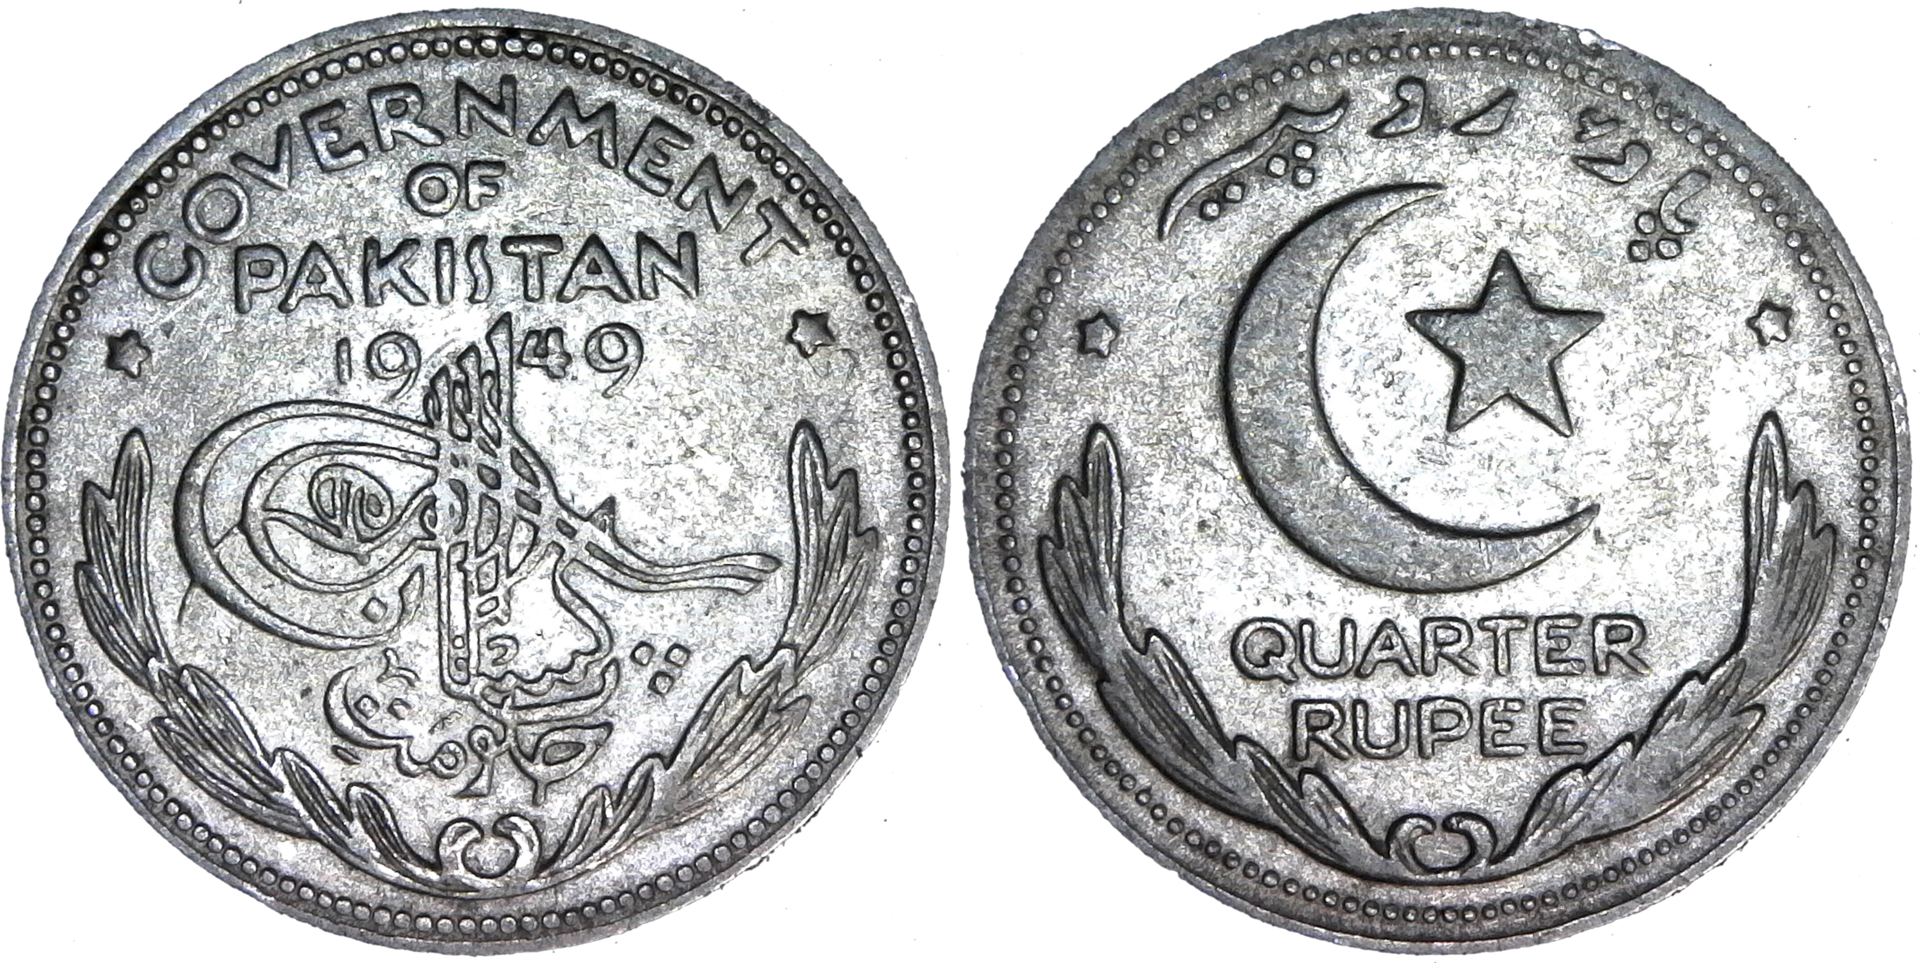 Pakistan Quarter Rupee 1949 obv-side-cutout.png